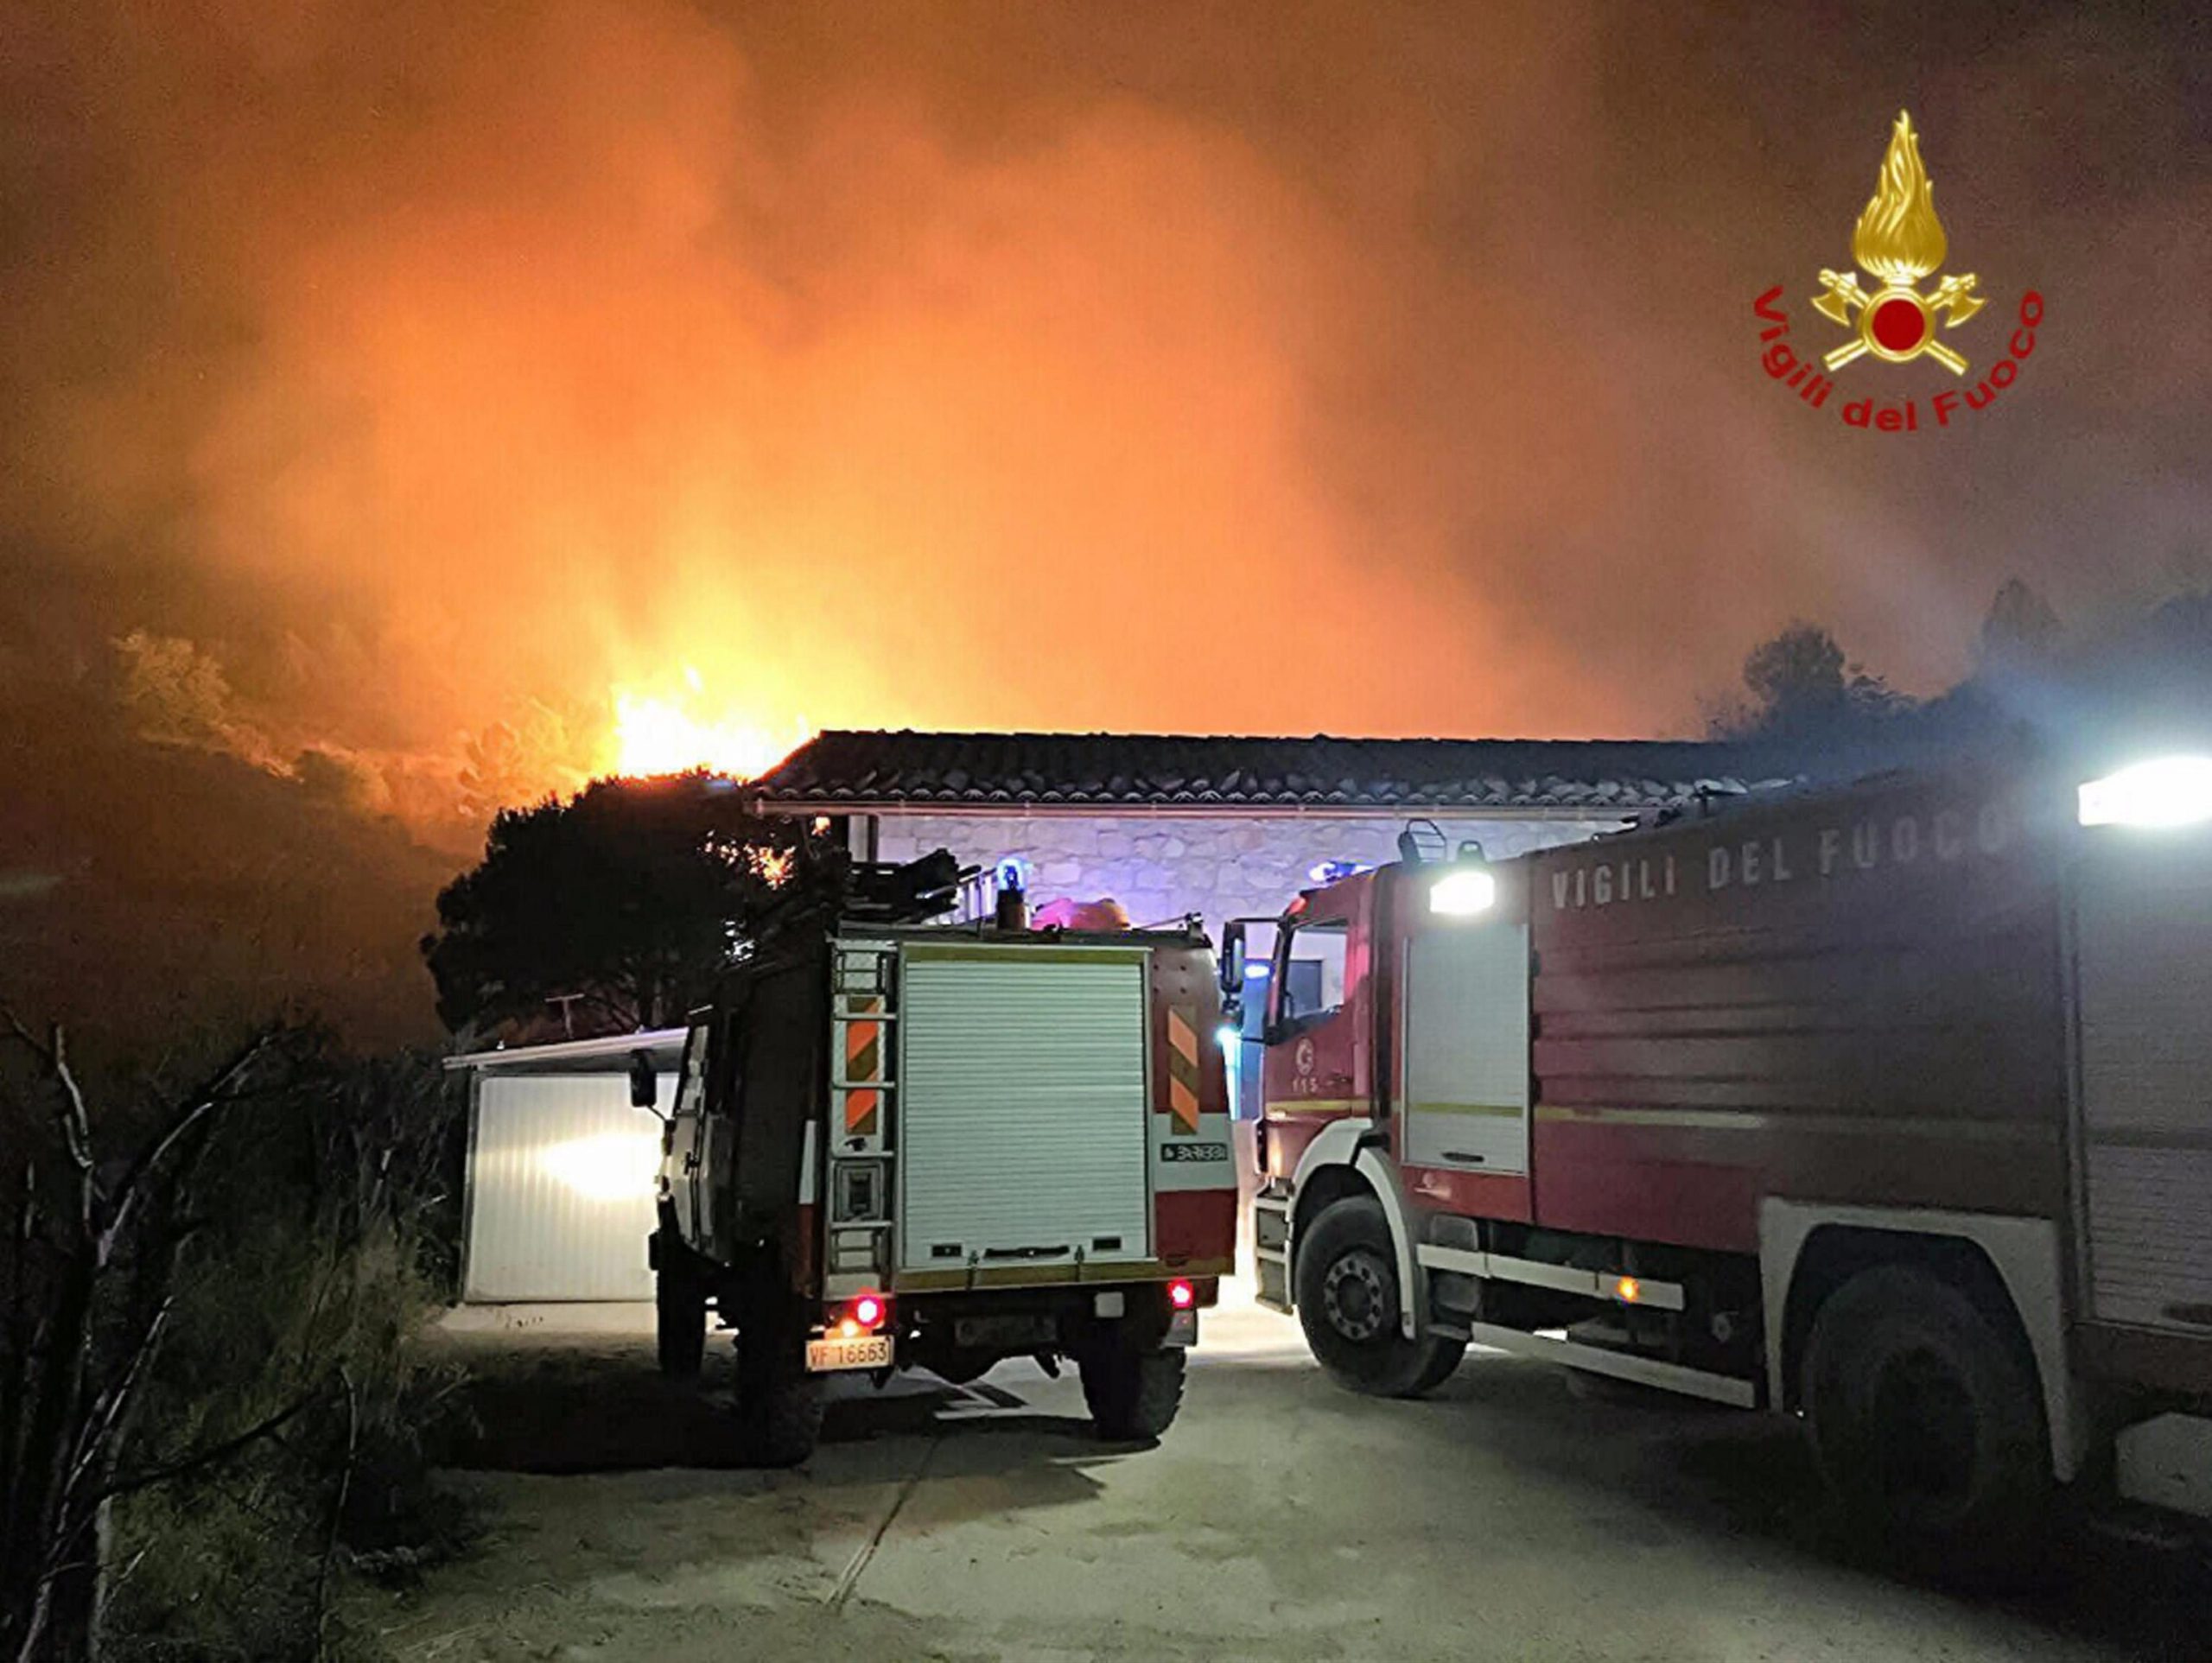 Ragusa, vigili del fuoco piromani: appiccavano fuoco per soldi ora indagati